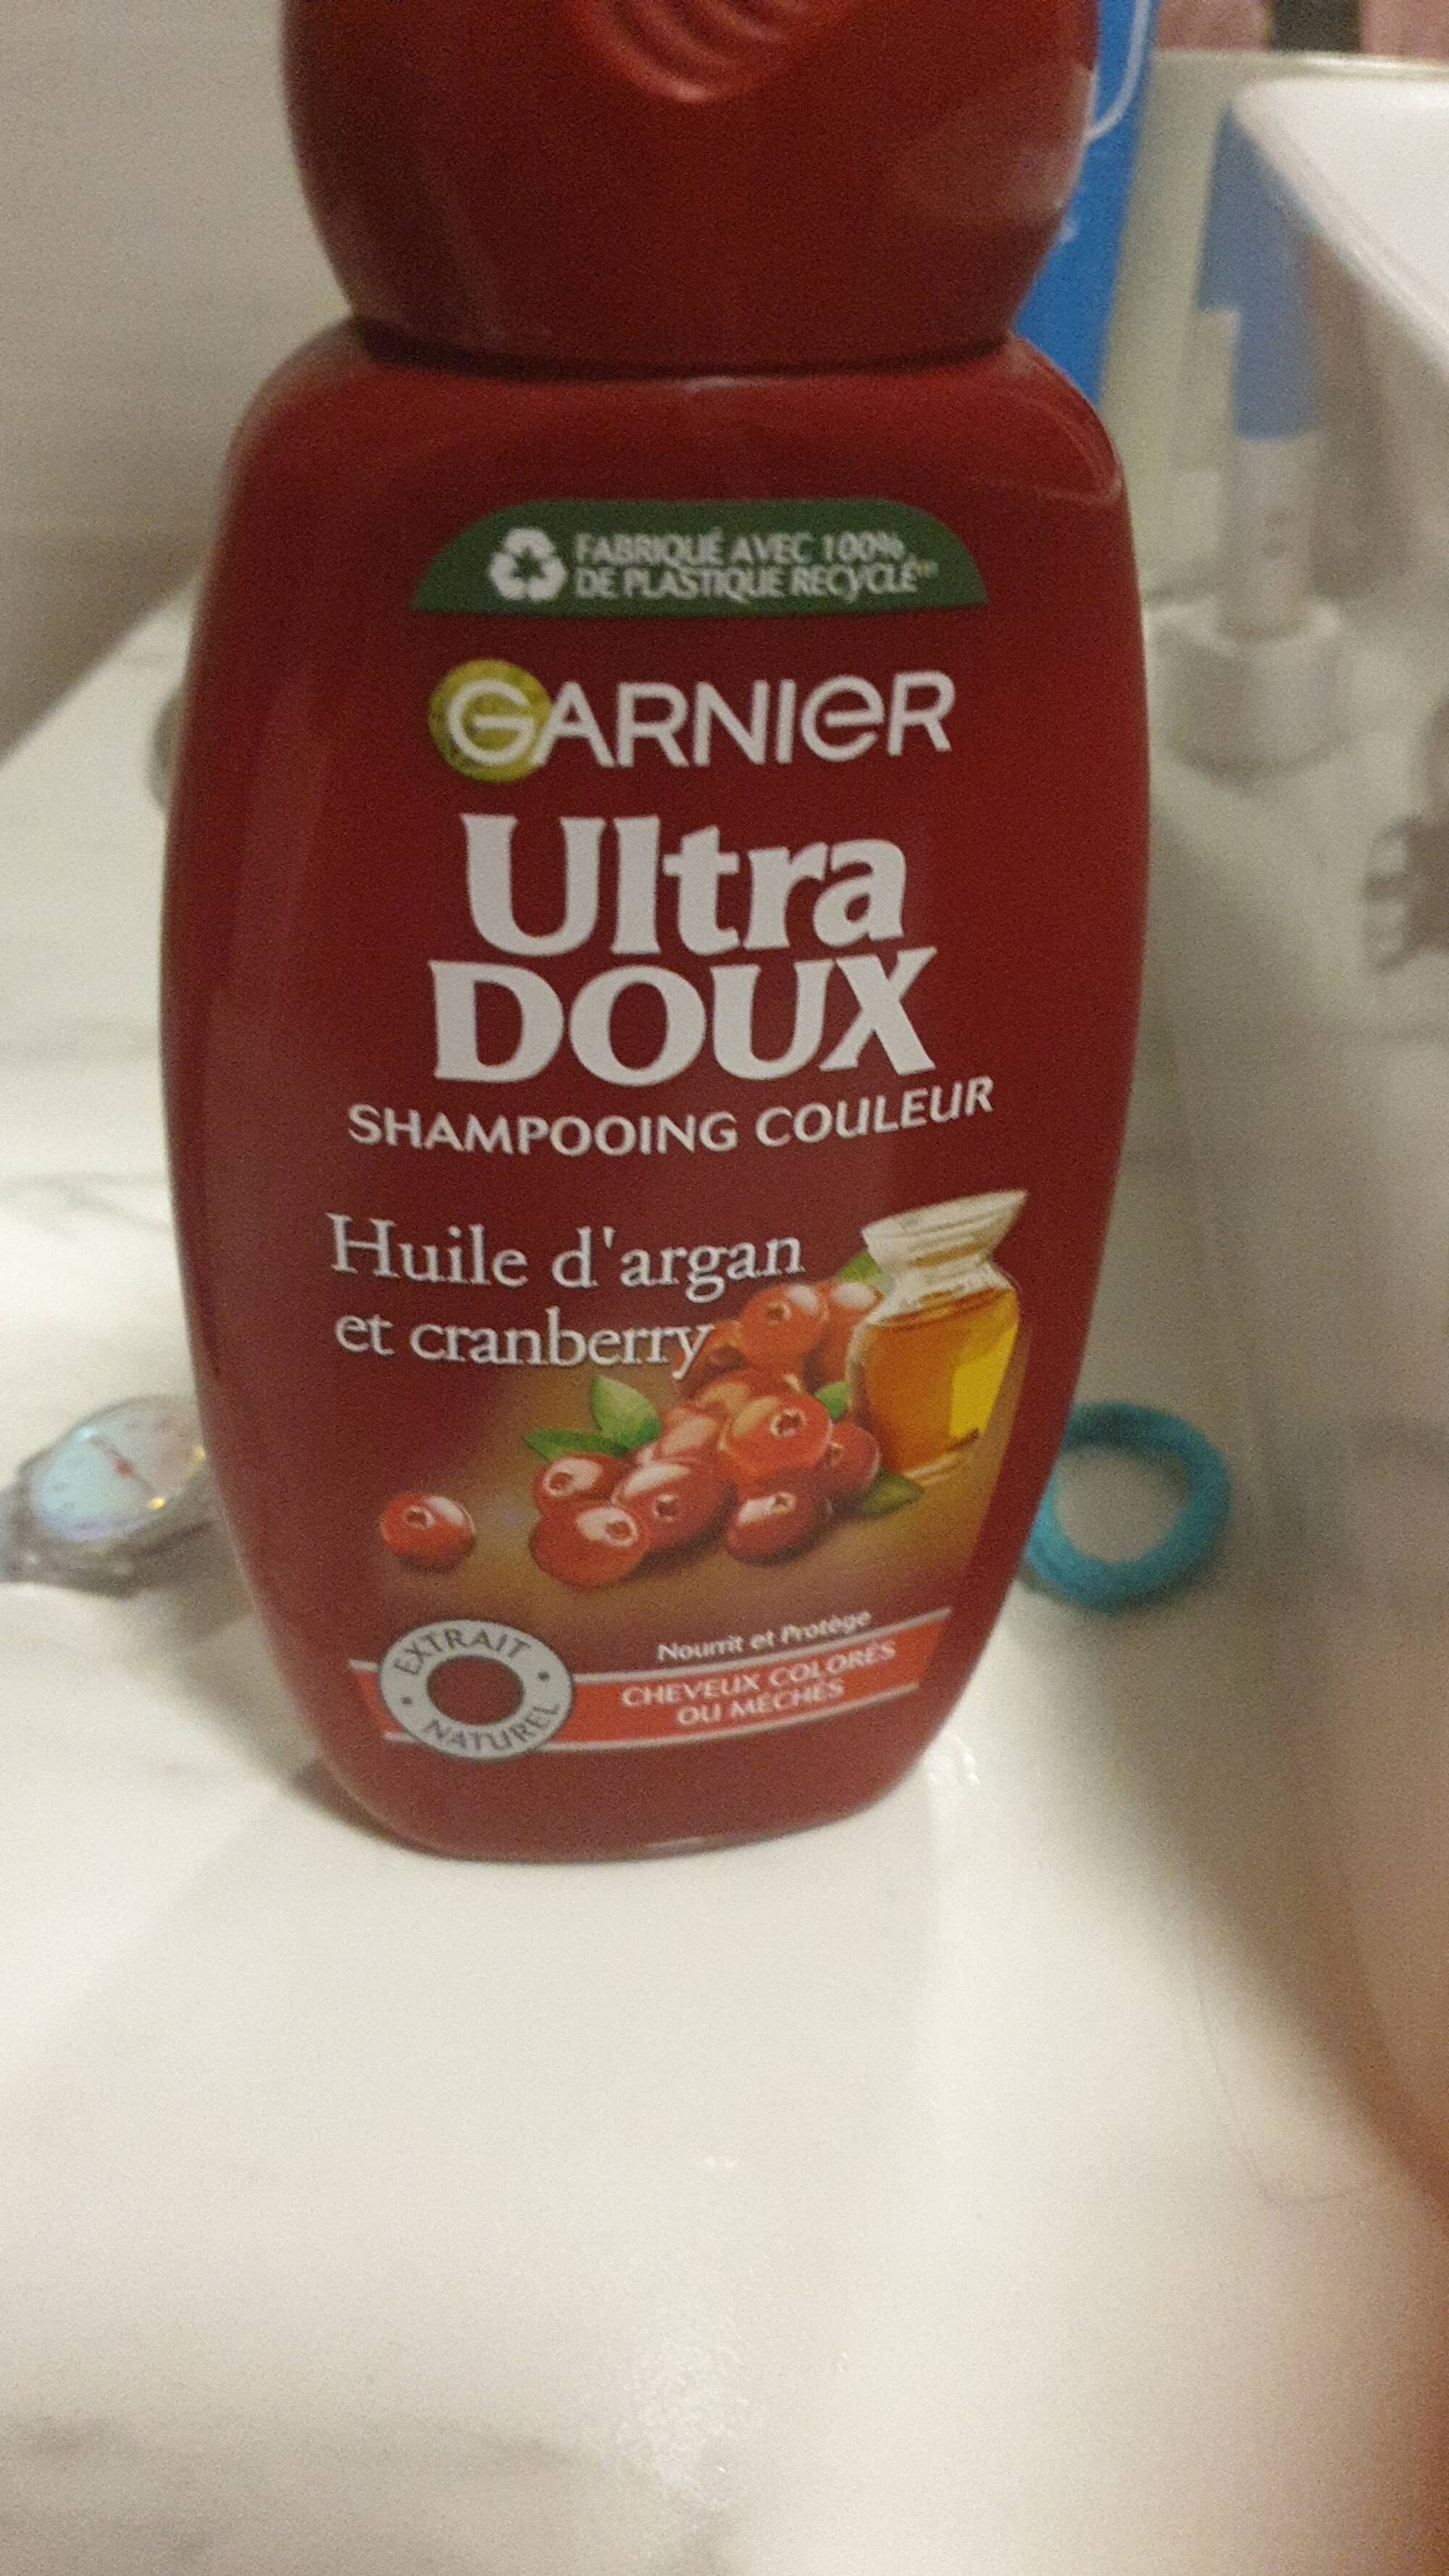 GARNIER - Ultra doux - Shampooing couleur Huile d'argan et cranberry